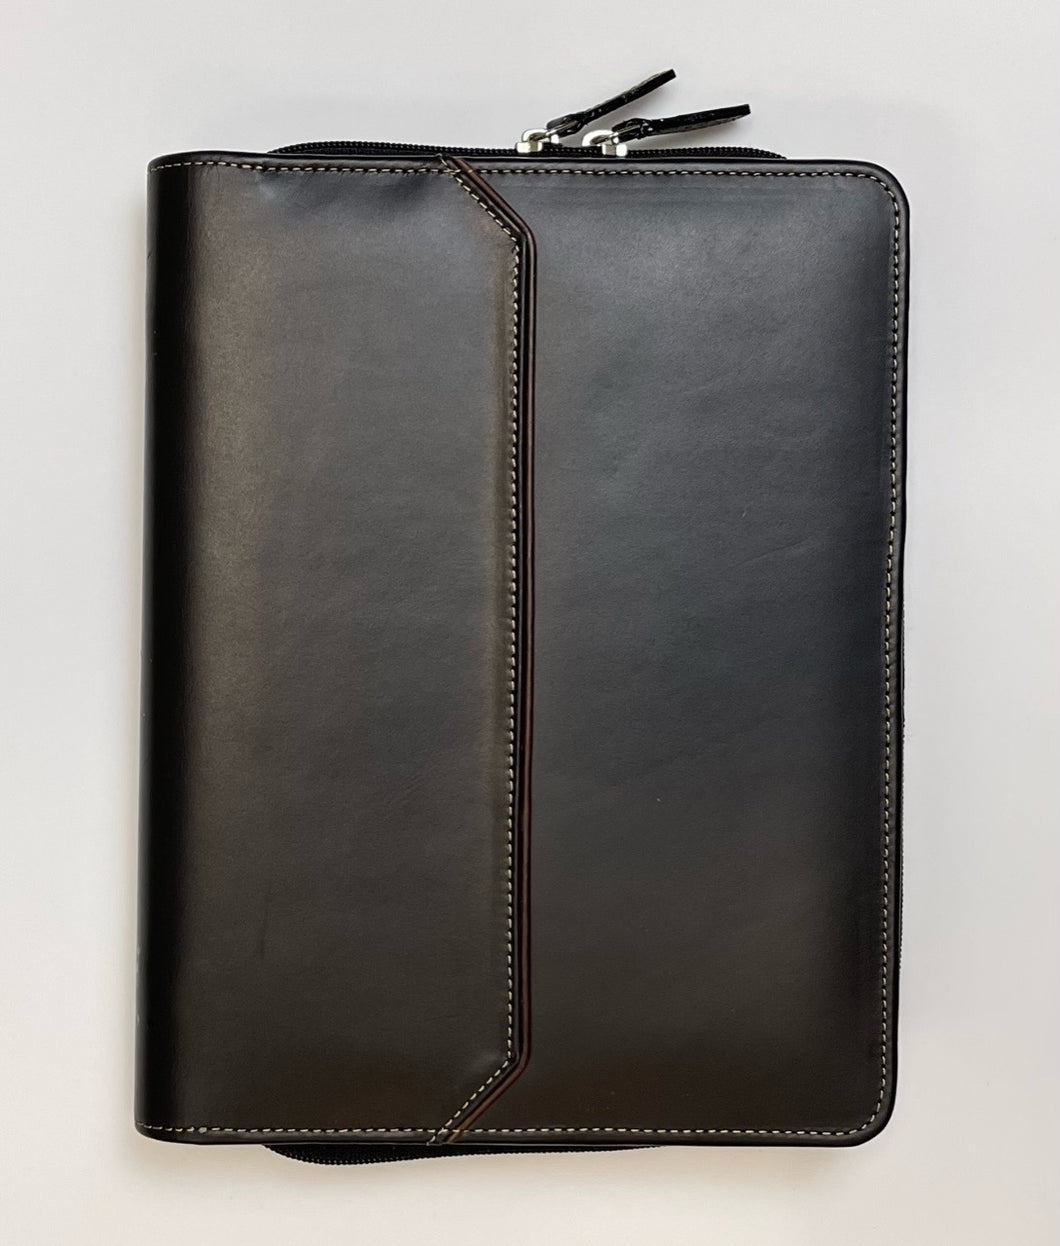 20 Pen Case -Seconds-Black leather